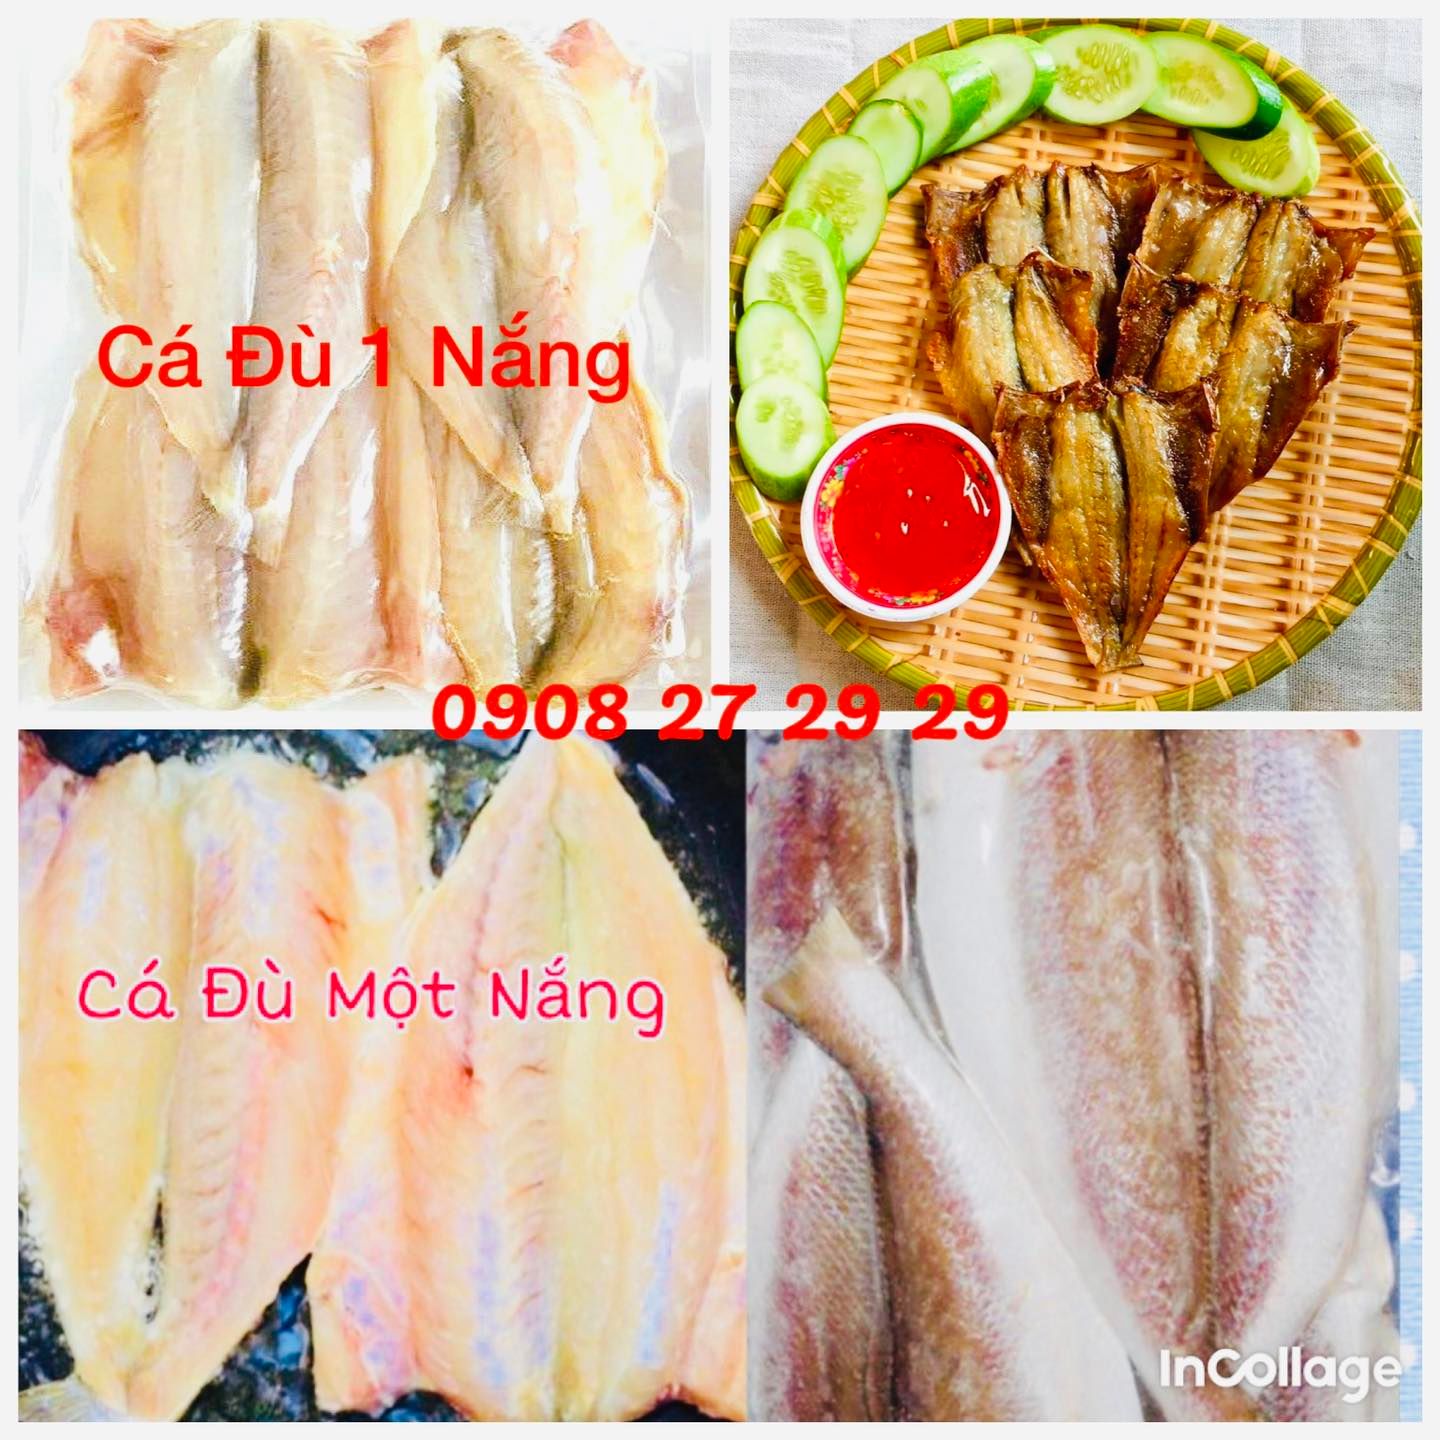 Người mua nên lưu ý gì khi mua hải sản khô Nha Trang ở cửa hàng?